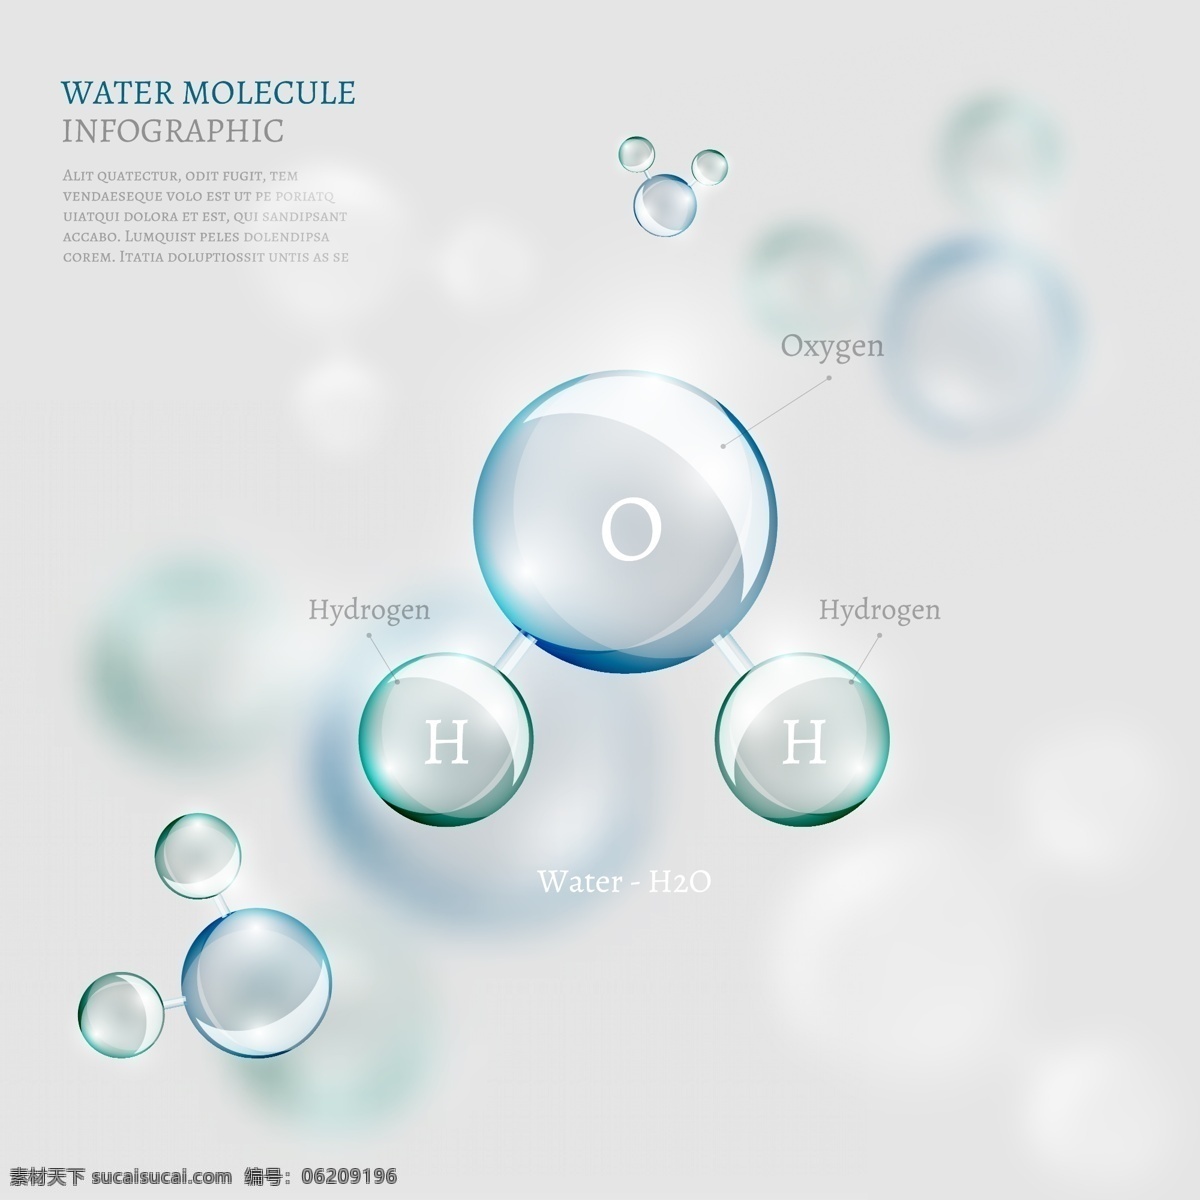 透明 科技 分子 信息 图表 元素 泡沫 dna 结构 水分子 细胞 分子结构 形状 球体 符号 医疗保健 连接 科学 原子 背景 生物 化学 生物技术 插图 微生物研究 文化艺术 绘画书法